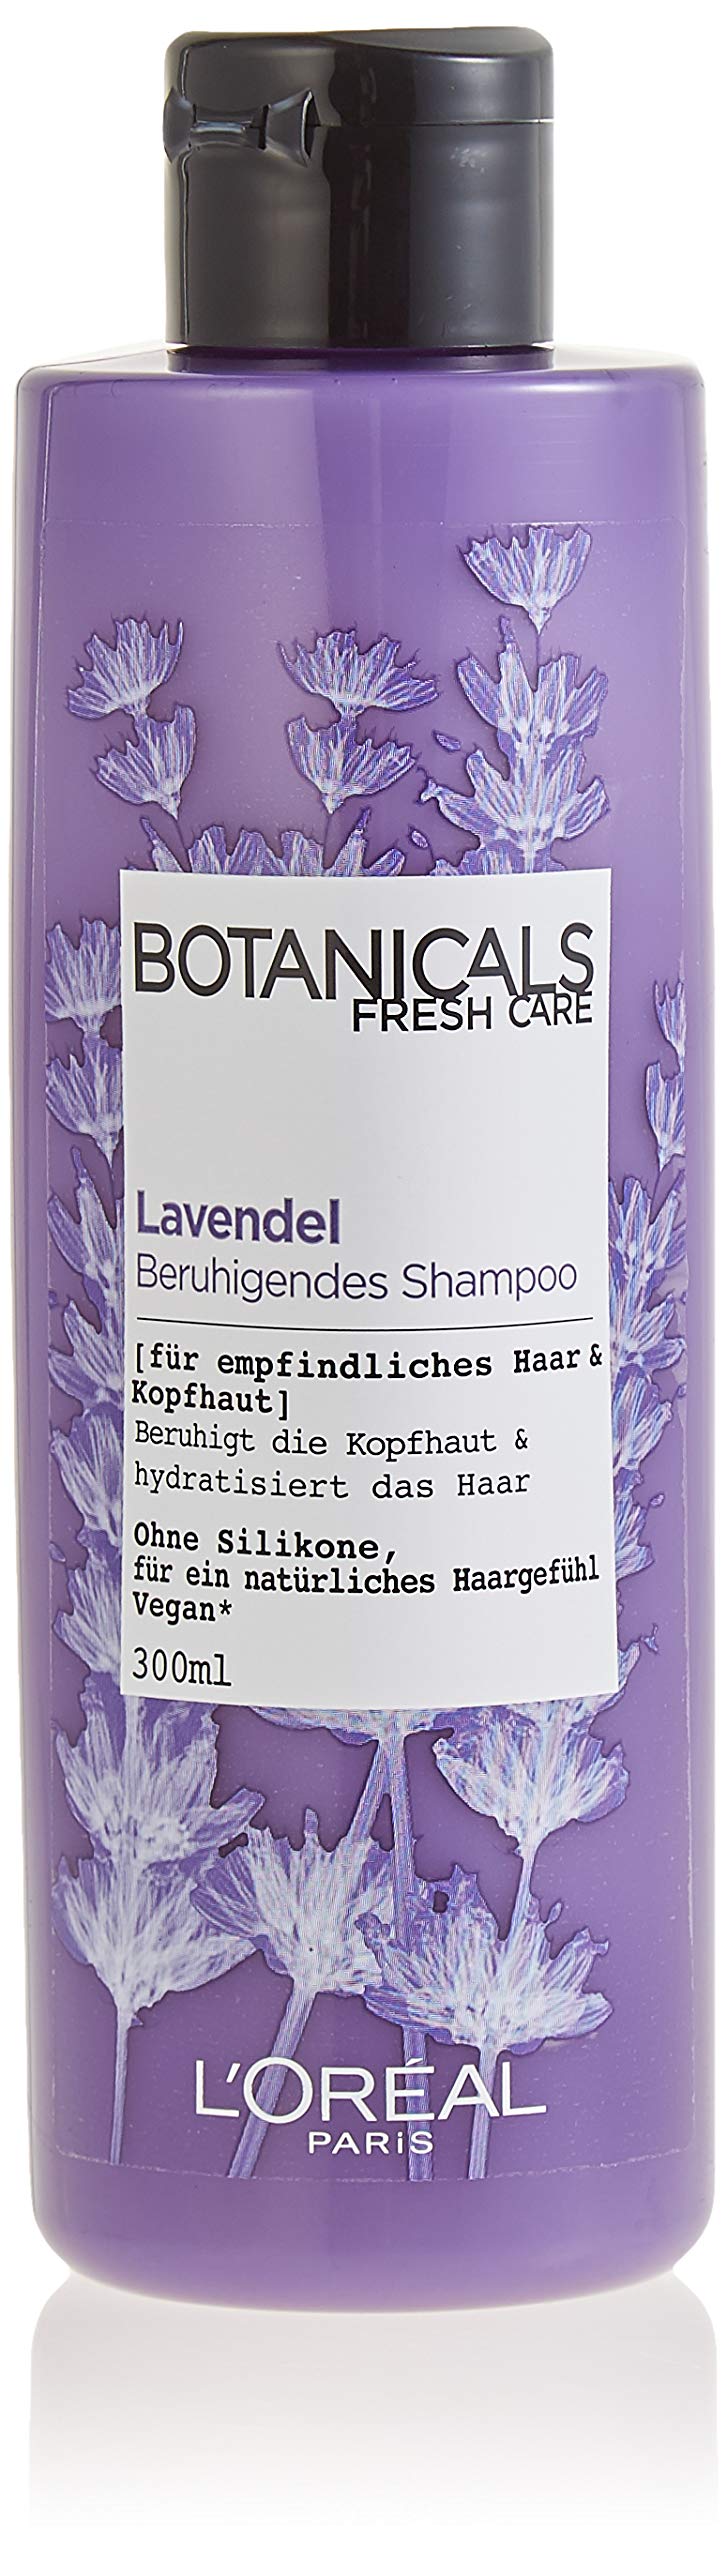 szampon do wlosow botanicals fresh care